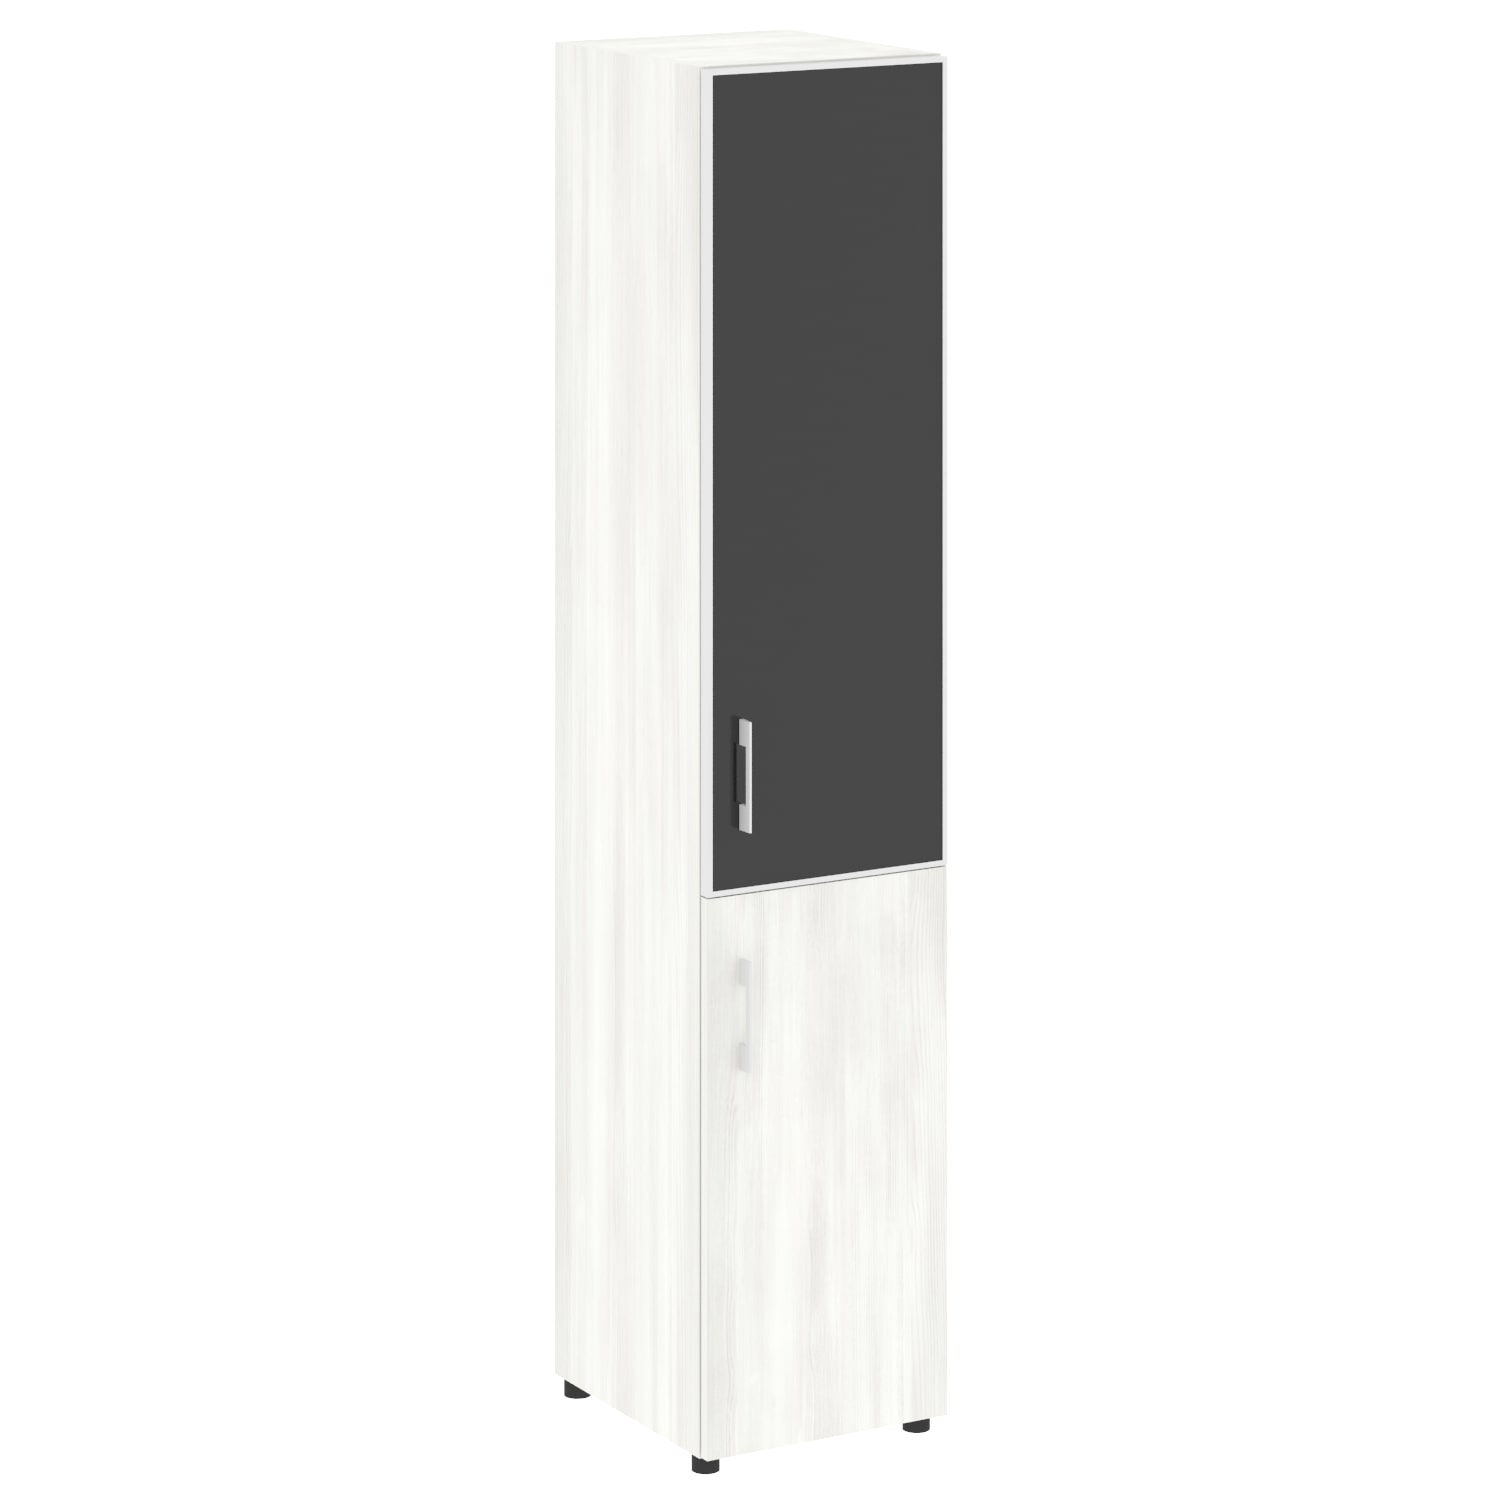 Шкаф узкий со стеклом LT-SU 1.2R white black 3